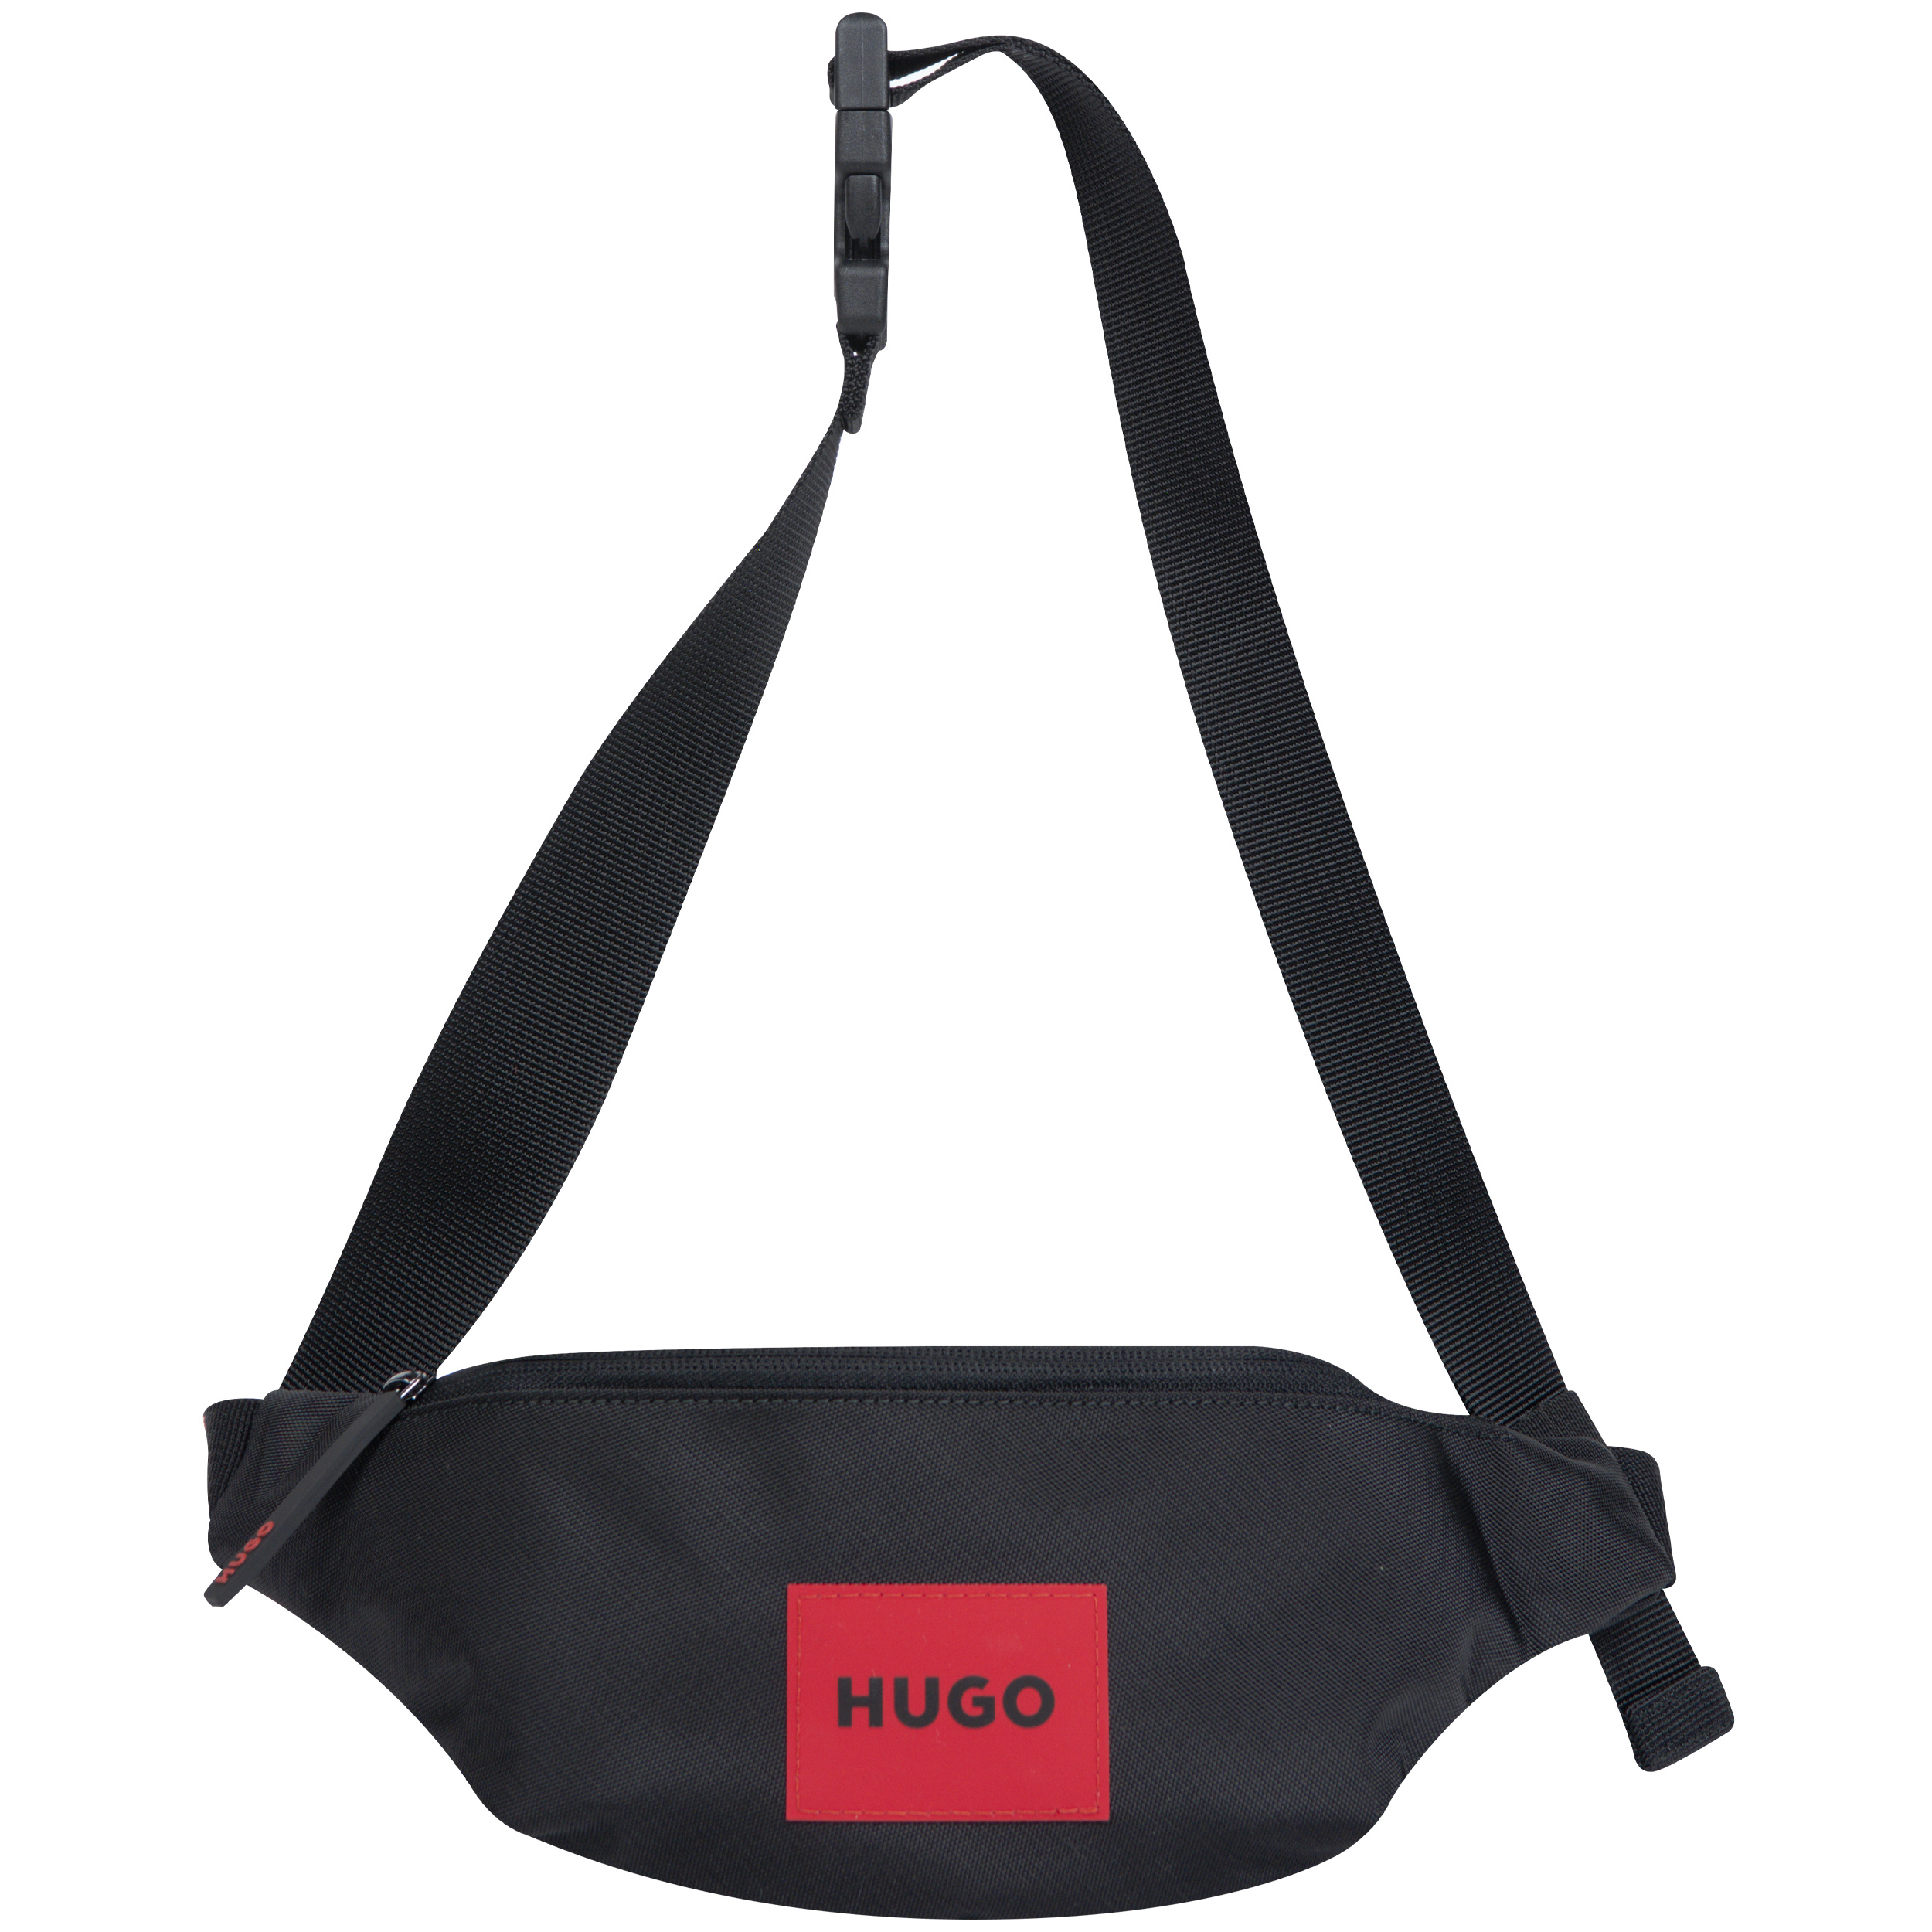 HUGO 'Eton Red' Label Bumbag Black